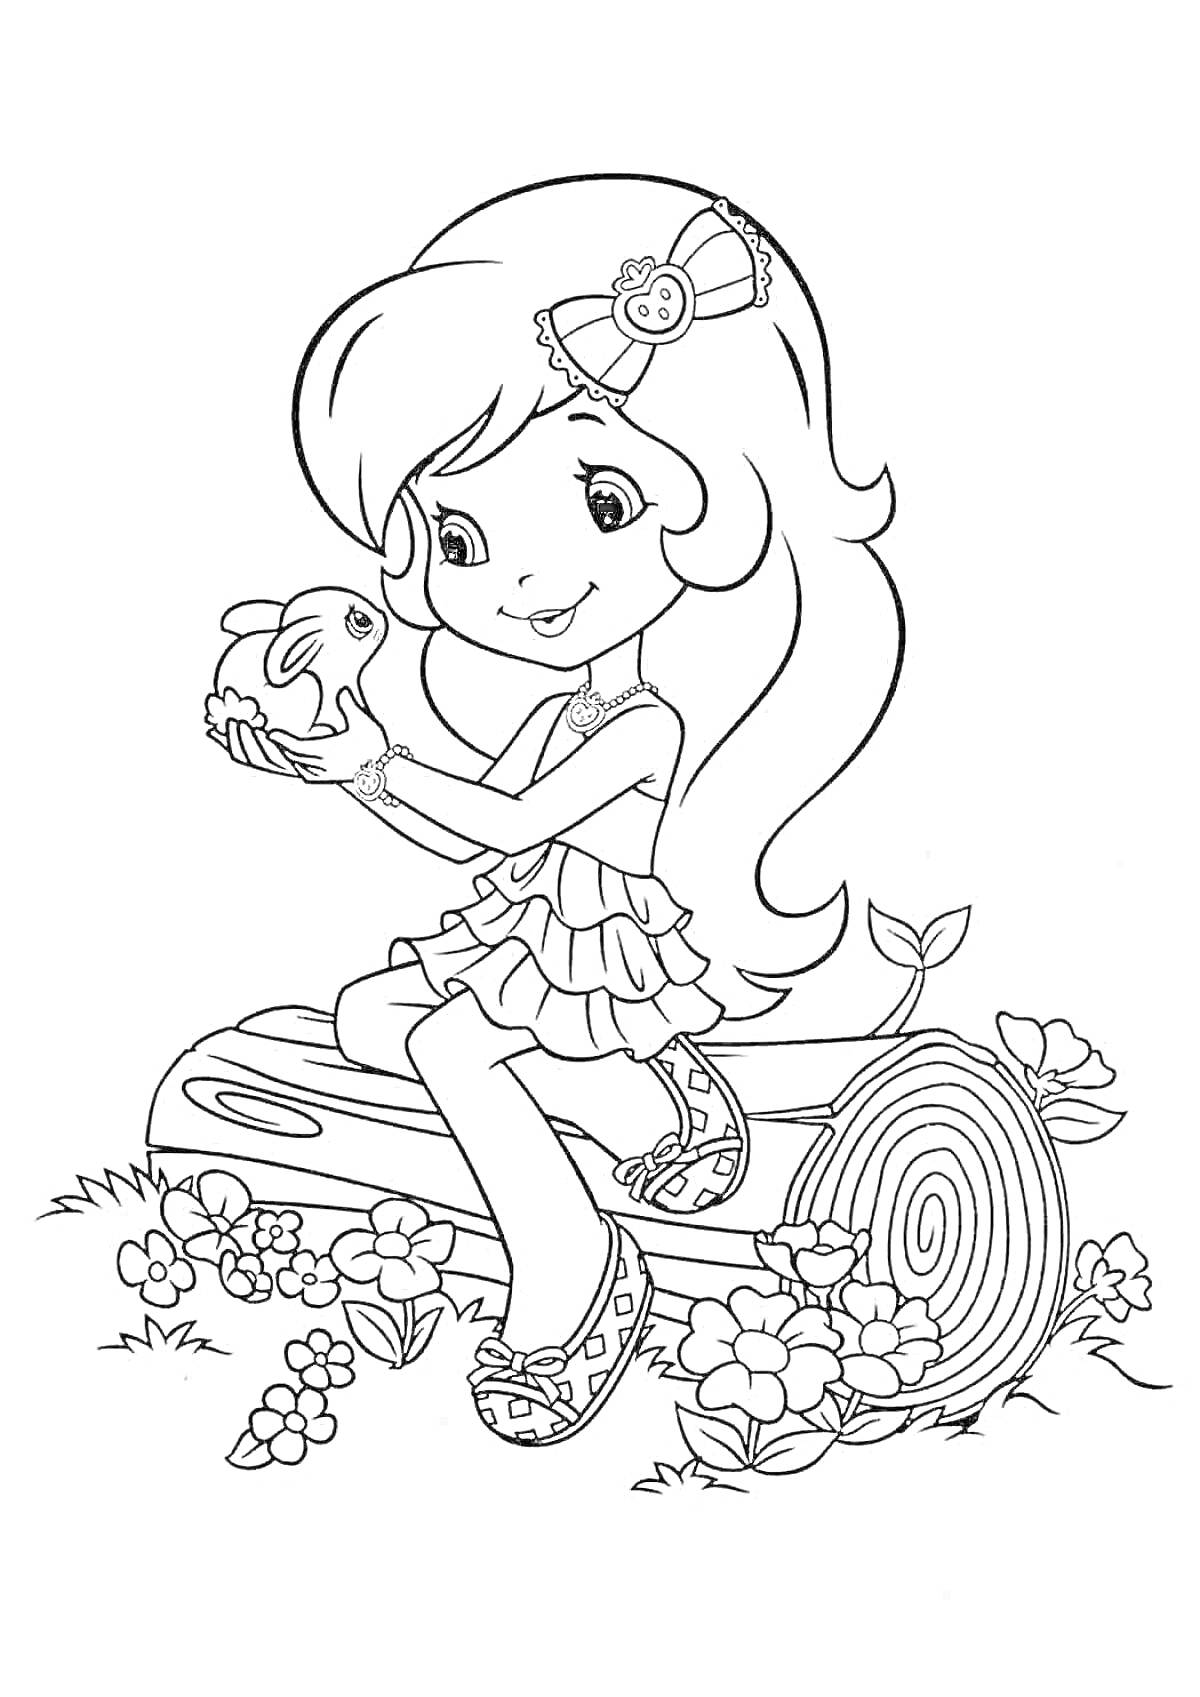 Раскраска Девочка с бантом в волосах, в платье с оборками, держащая кролика, сидя на бревне с цветами